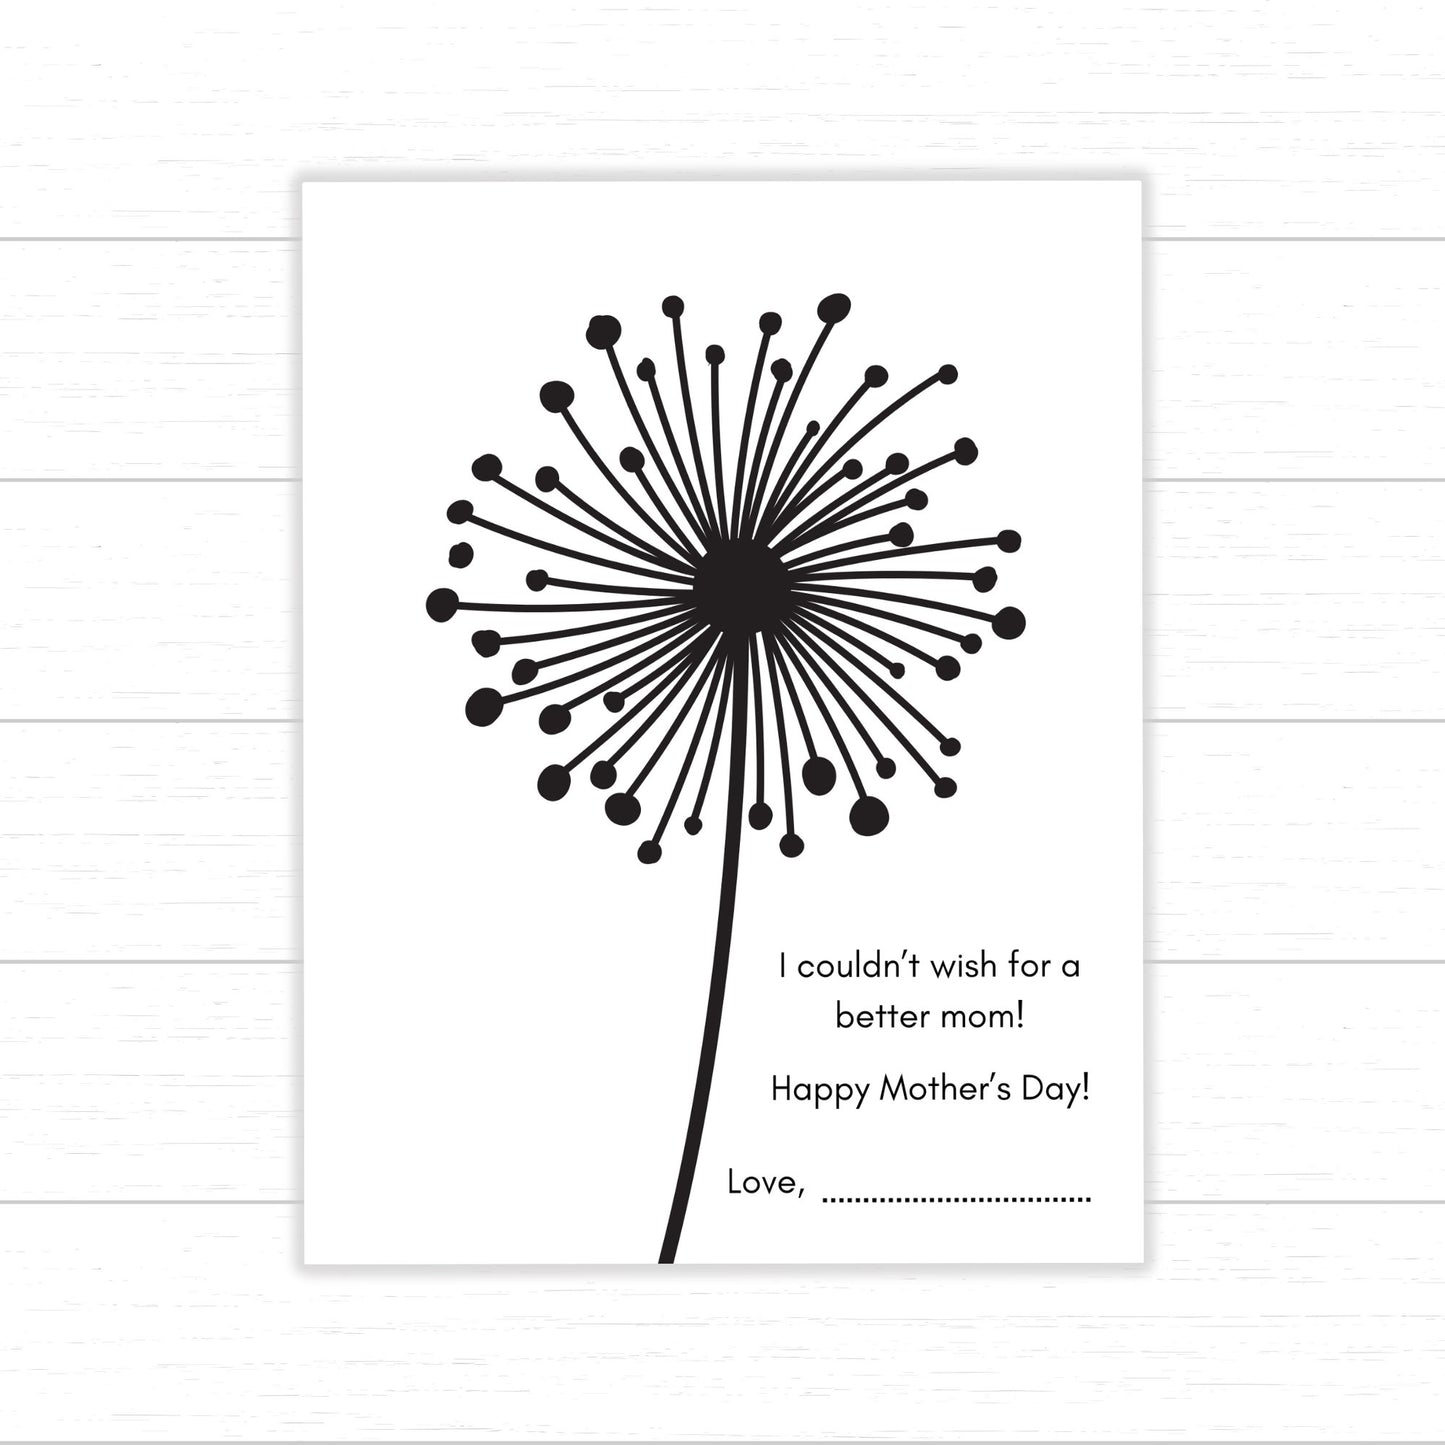 Mother's Day Dandelion Fingerprint Art, Printable Keepsake, DIY Gift Idea for Mom, Mother's Day Craft, Homemade Gift for Mom